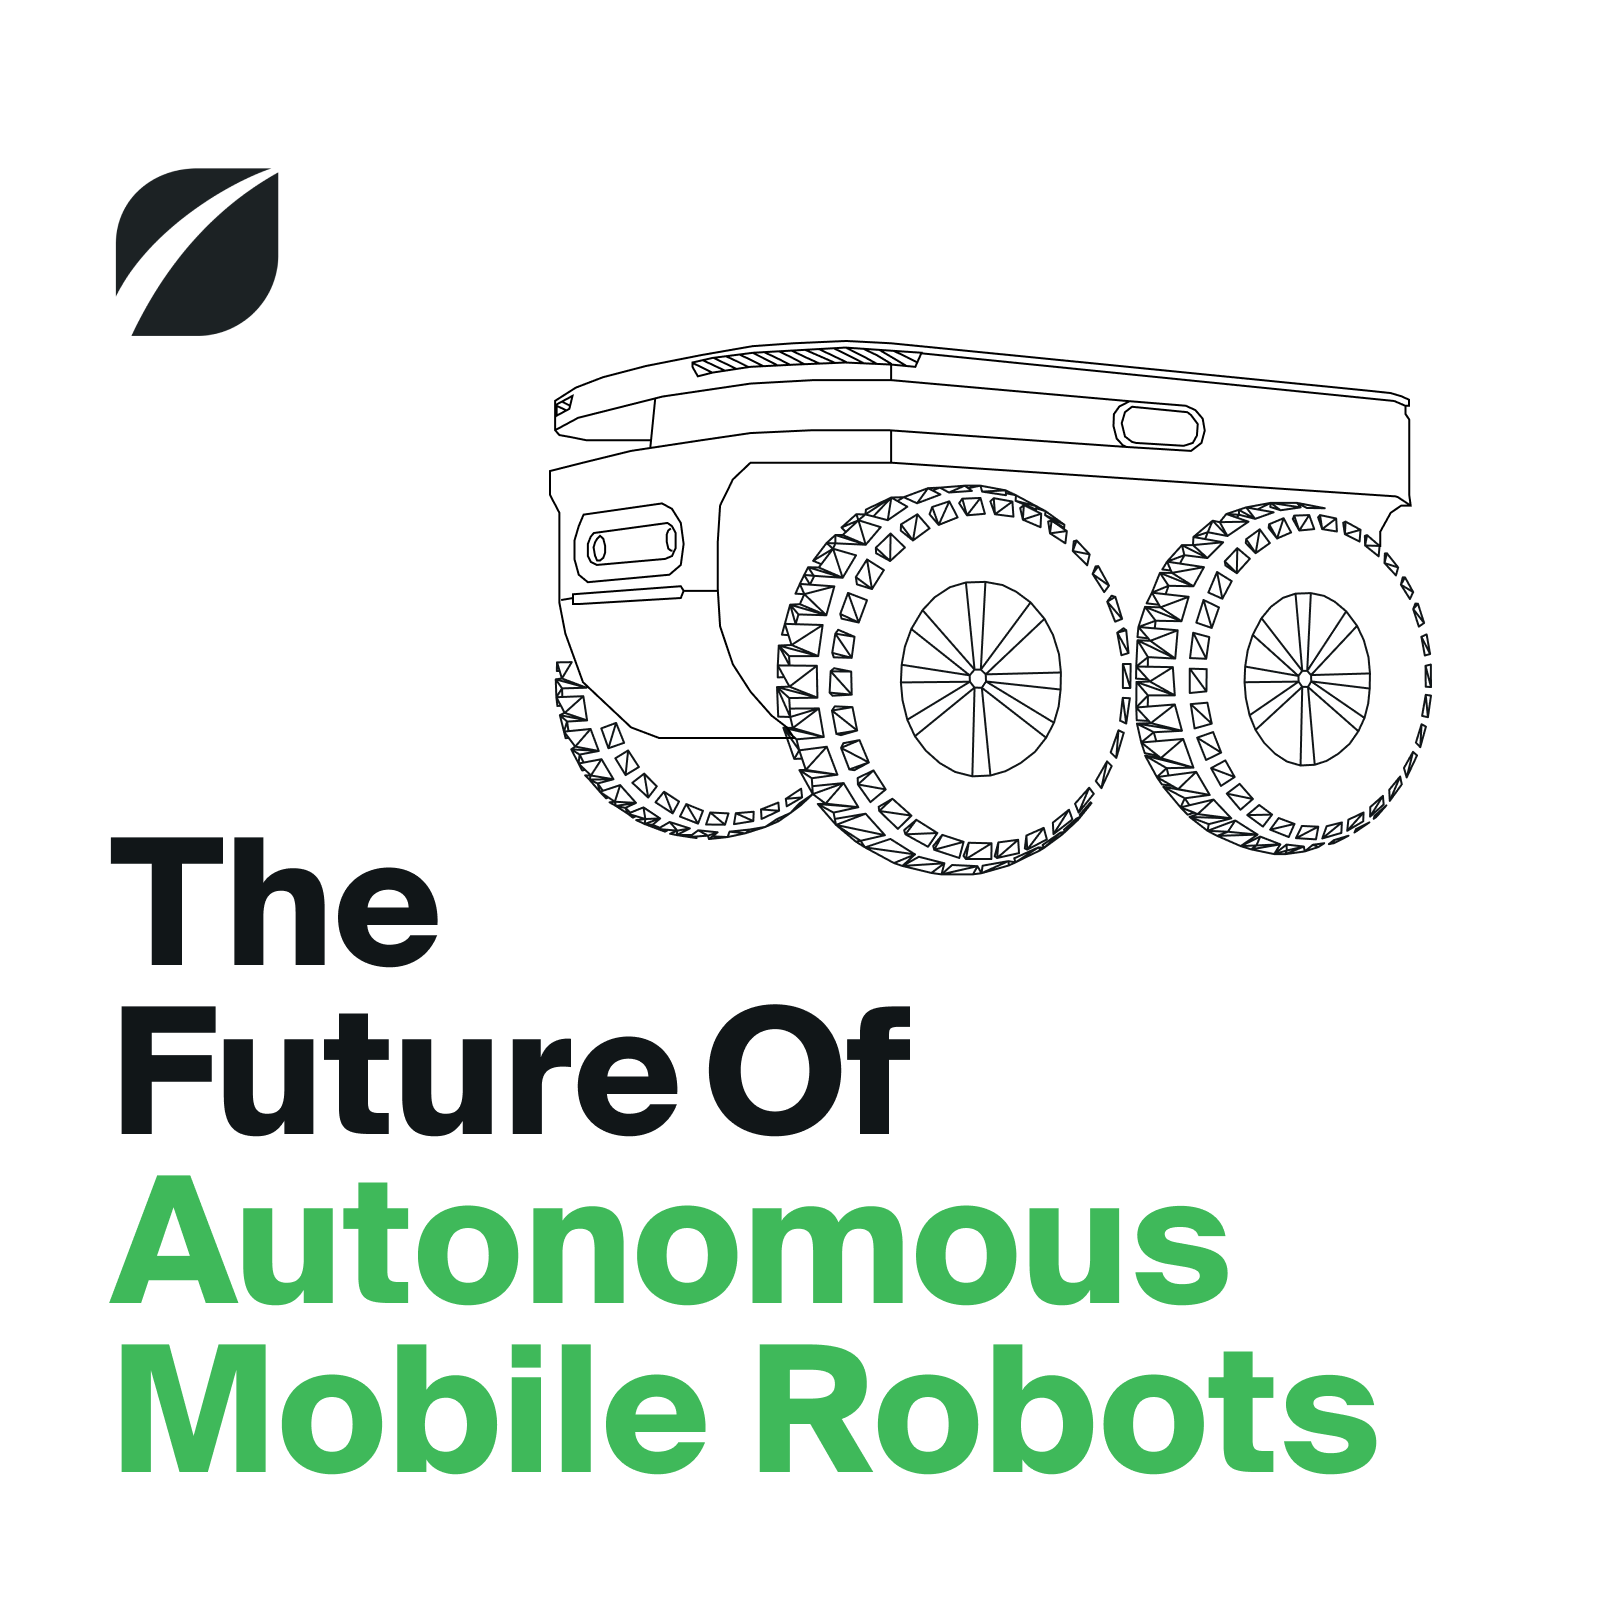 The Future Of Autonomous Mobile Robots